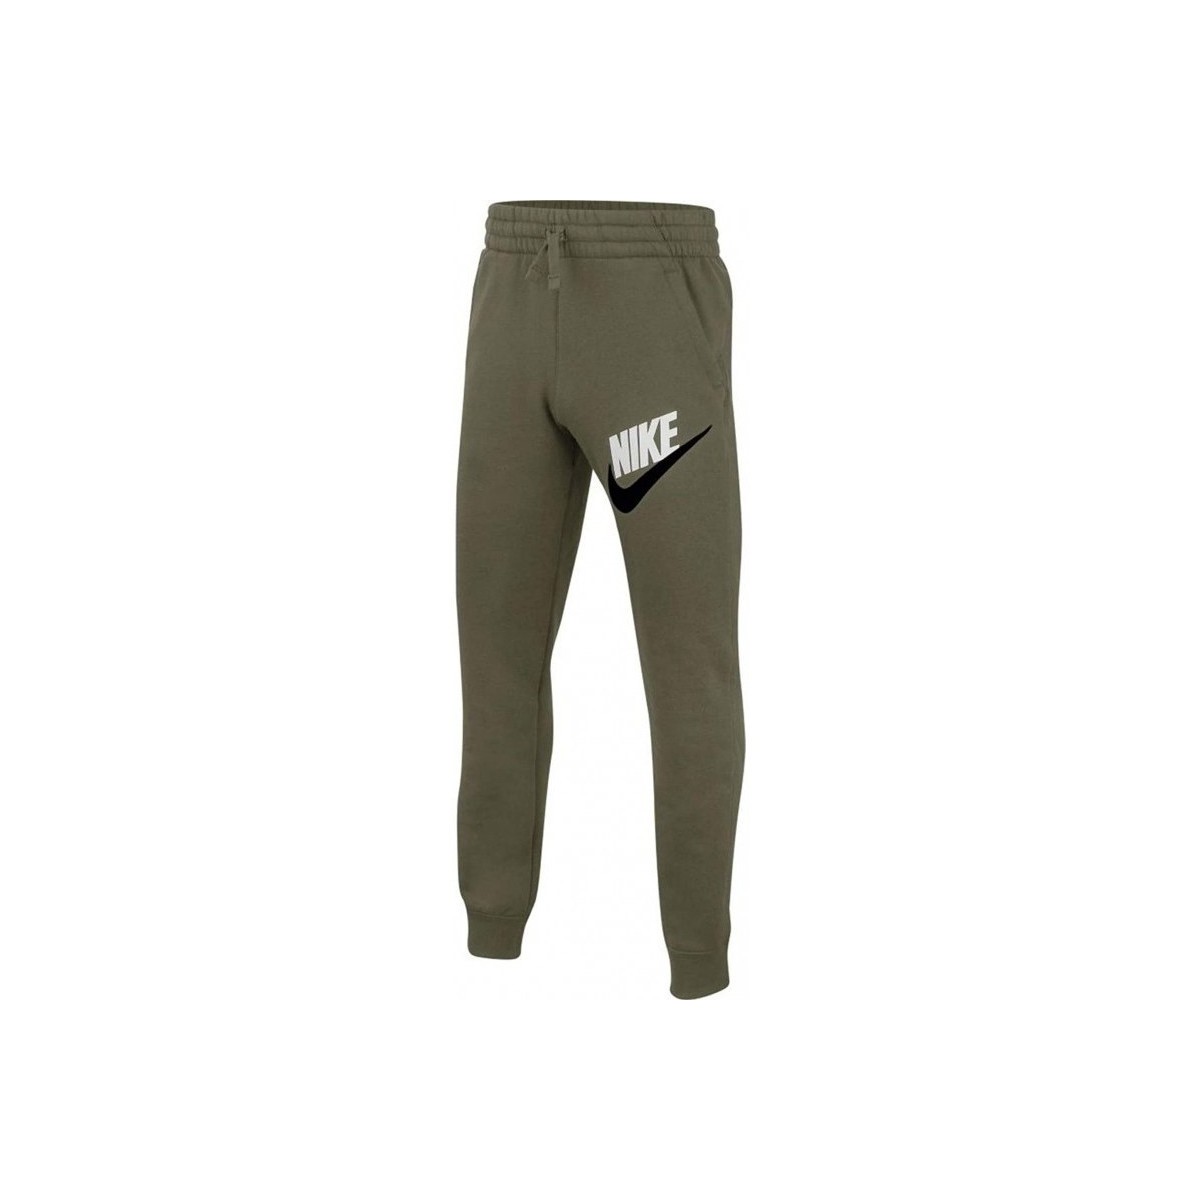 Textil Chlapecké Teplákové kalhoty Nike PANTALN CHNDAL NIO  BV0786 Zelená